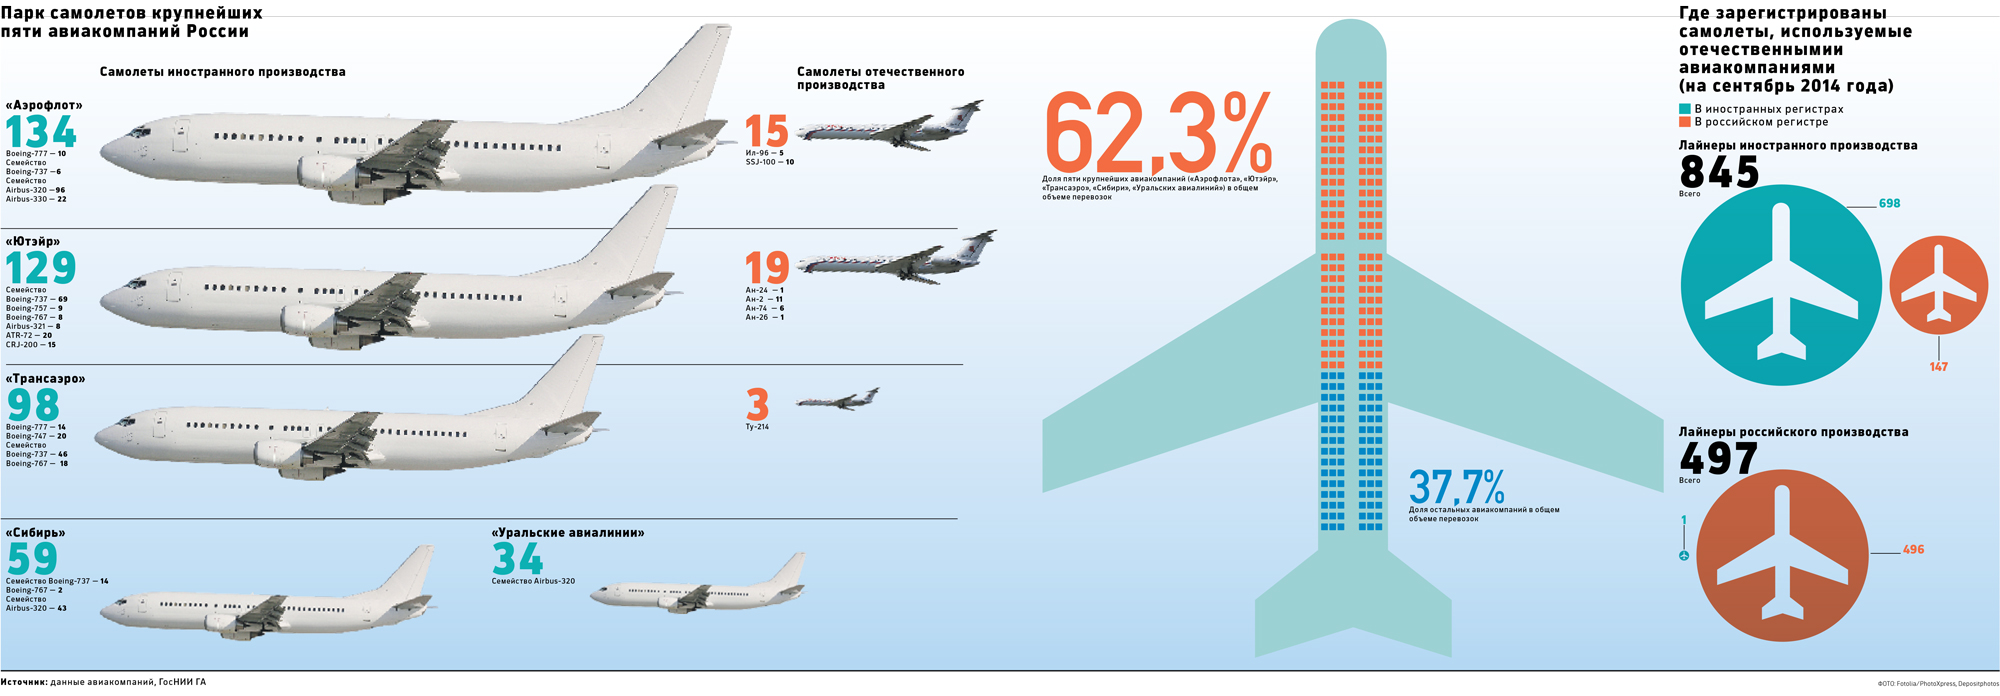 Регистрируя самолеты за рубежом авиакомпании сэкономили 145 млрд руб.